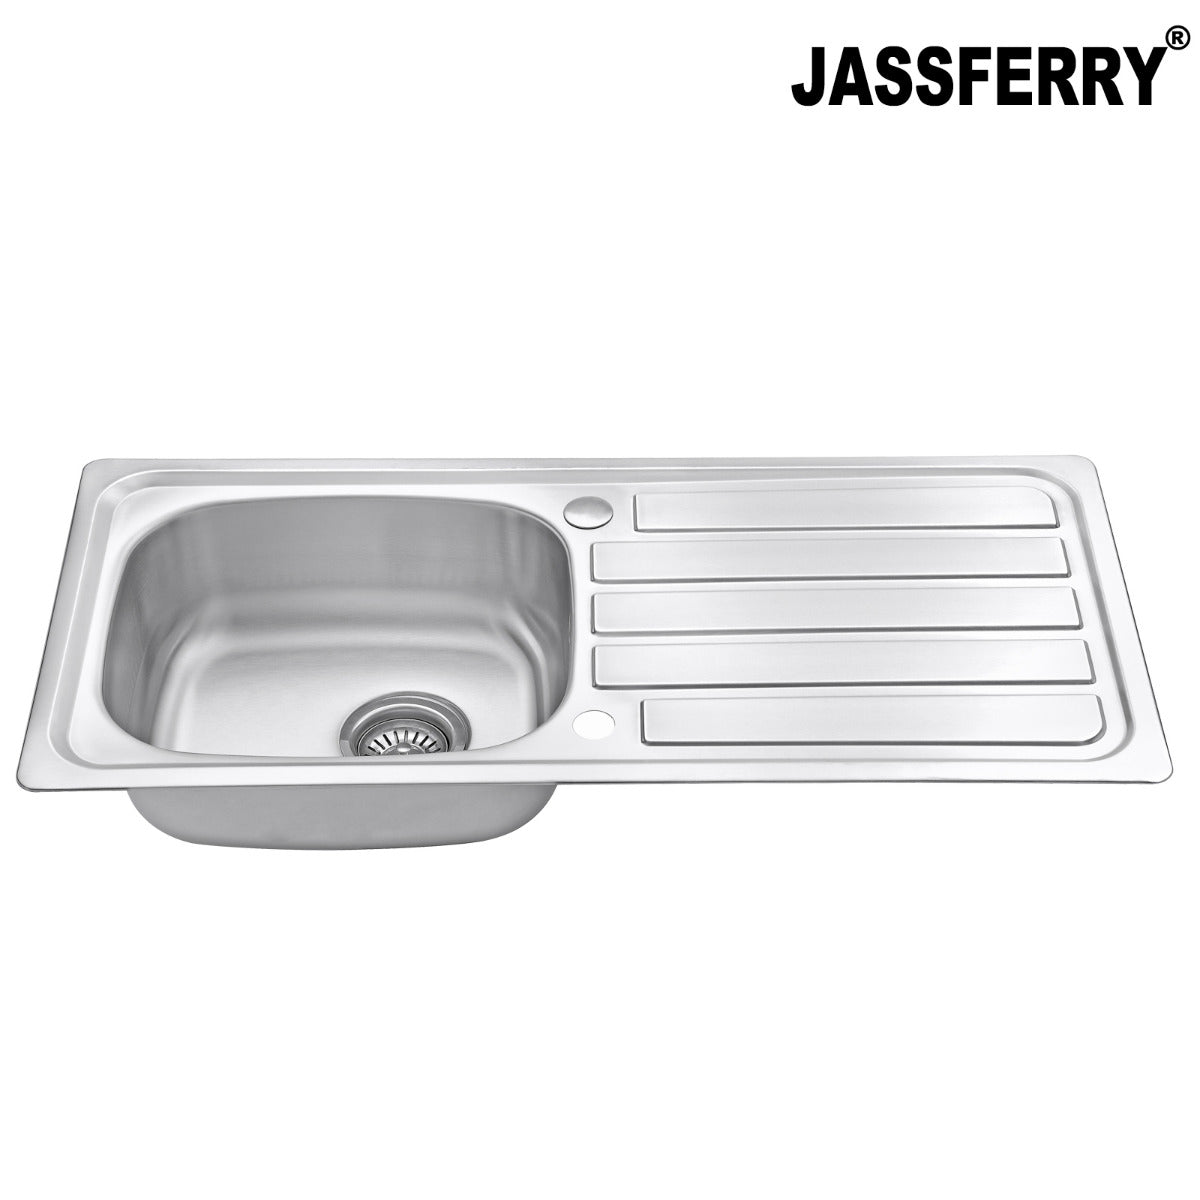 JassferryJASSFERRY 930 x 430 mm Stainless Steel Kitchen Sink 1 Bowl with Waste StrainerKitchen Sink